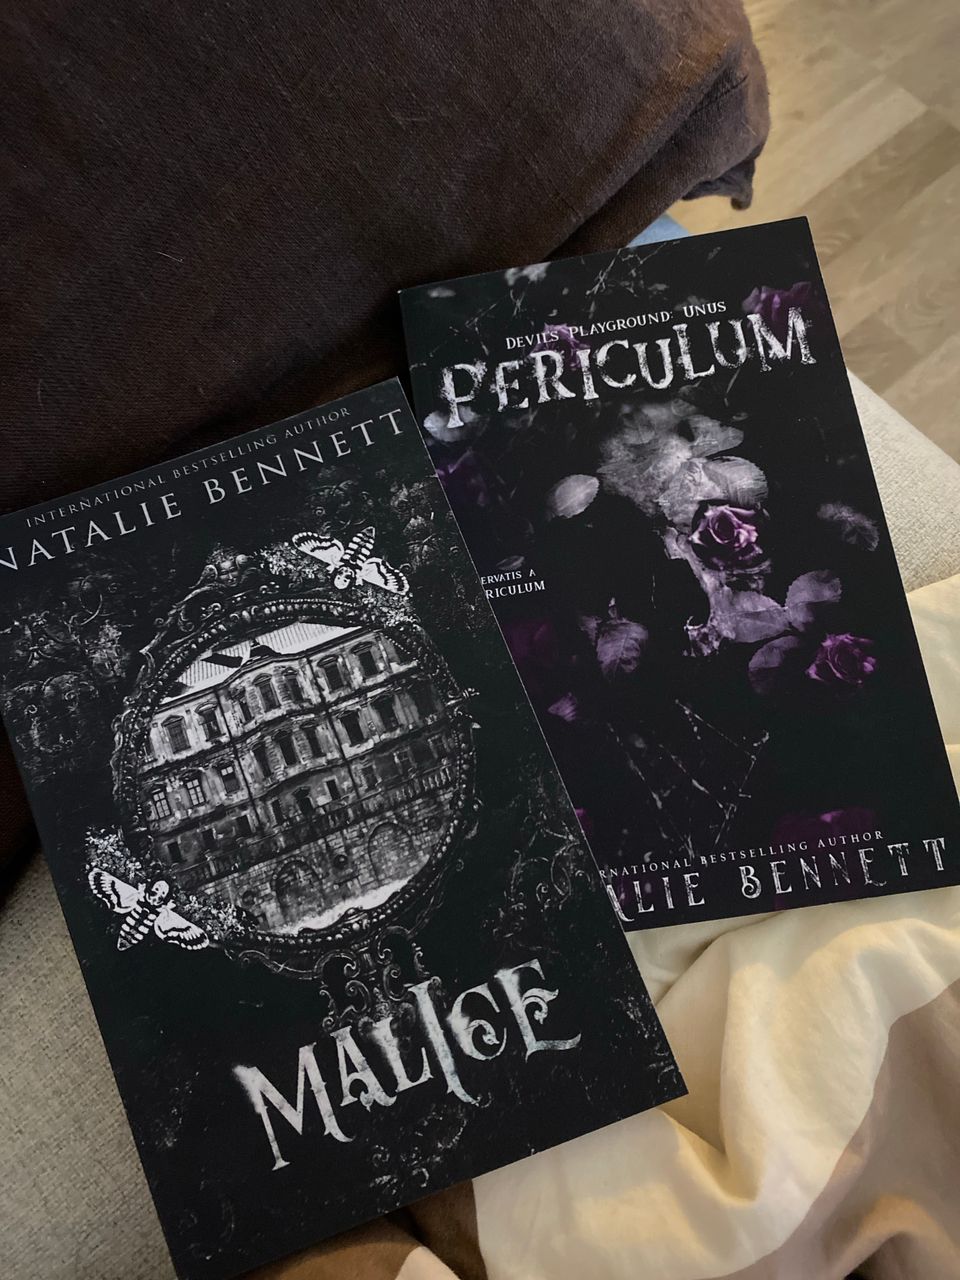 Dark Romance kirjat, Malice, Periculum, Natalie Bennett